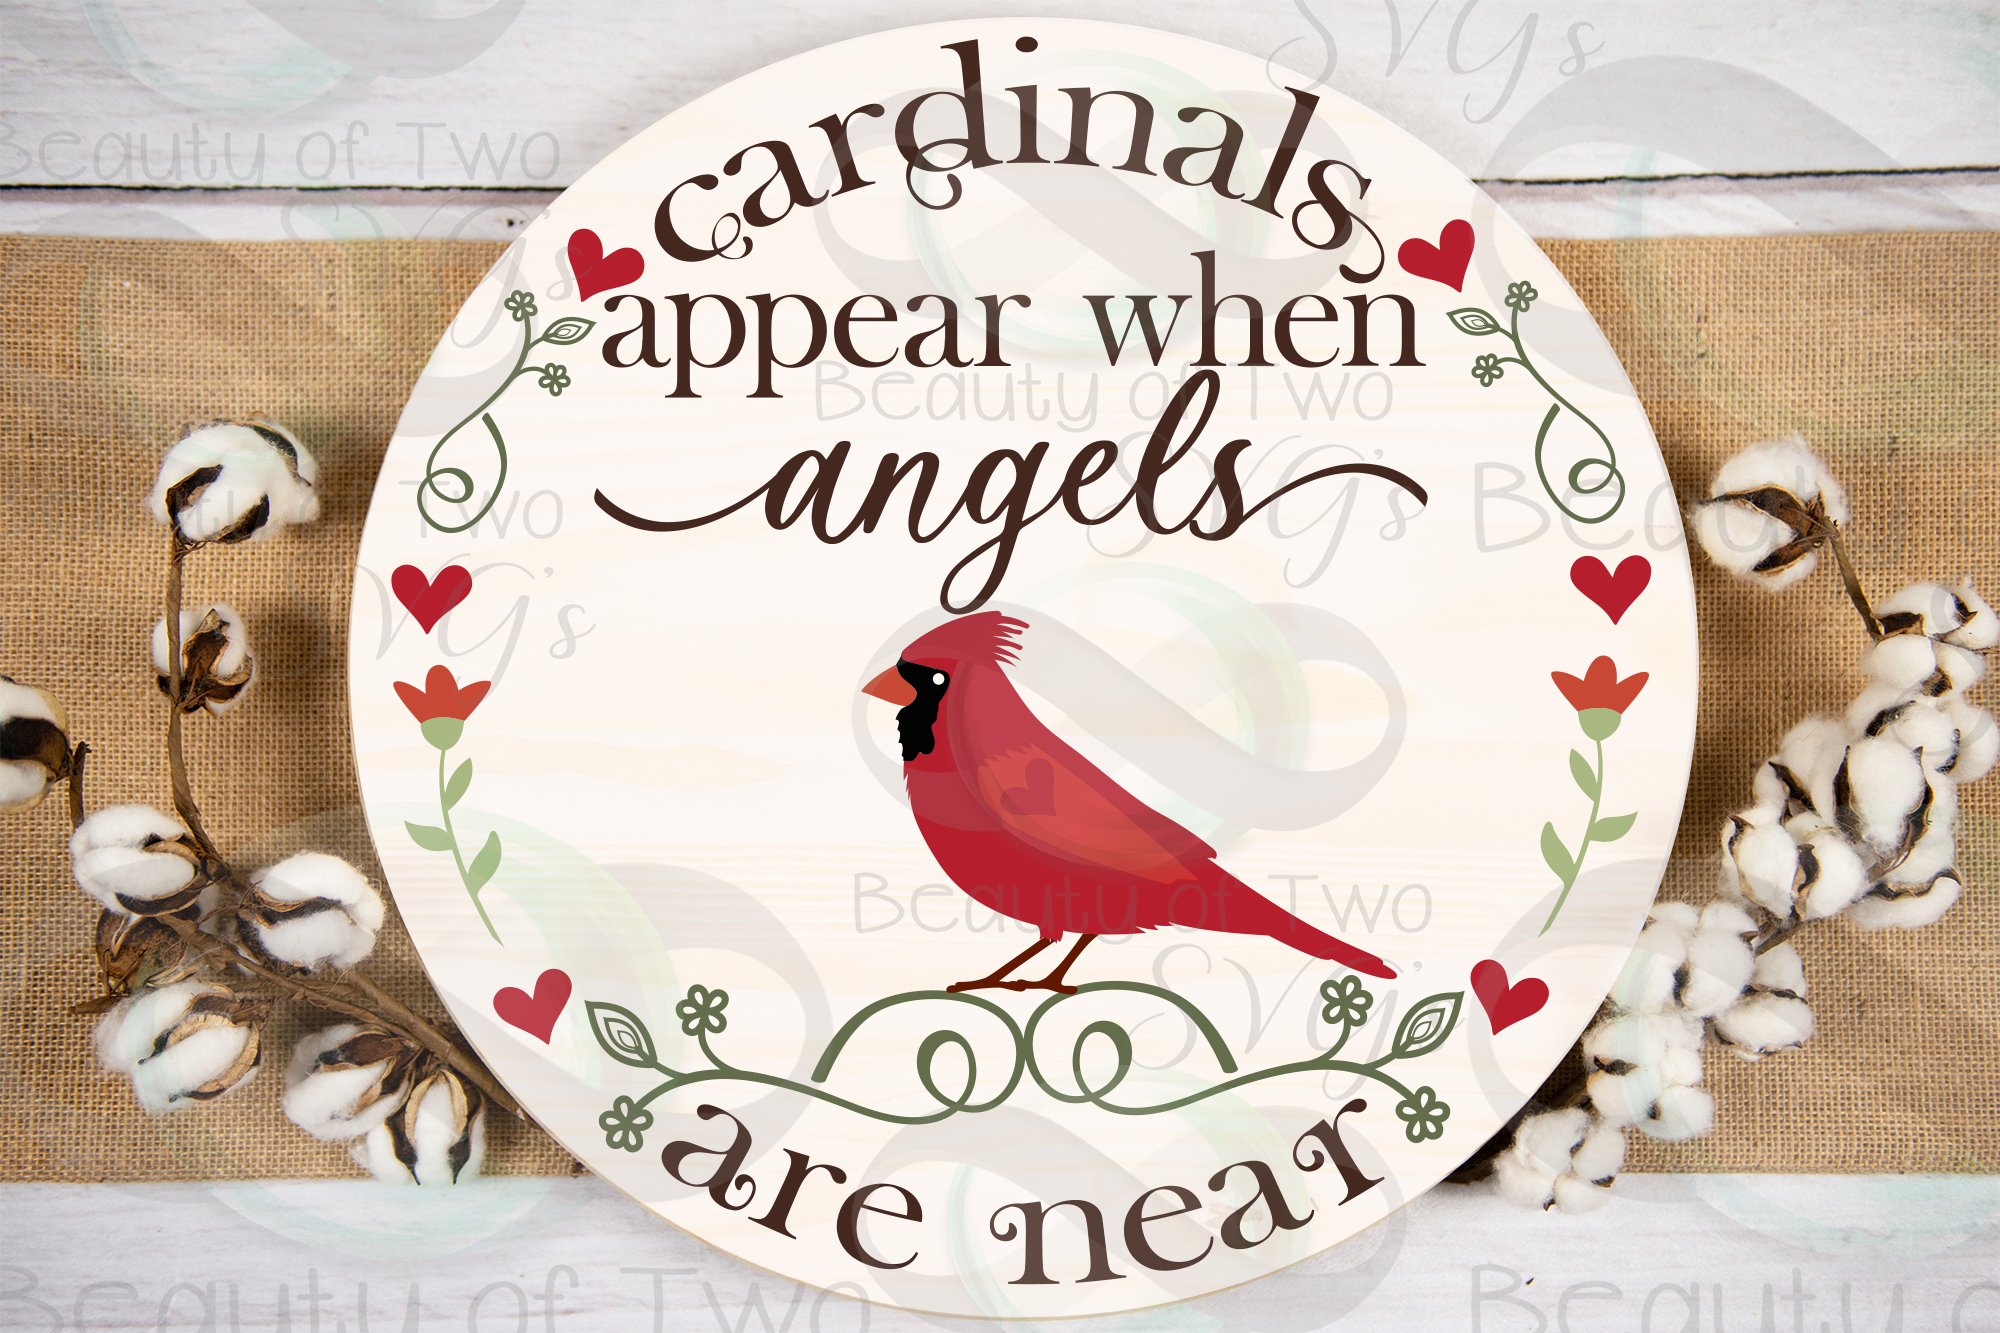 Springfield Cardinals ✓